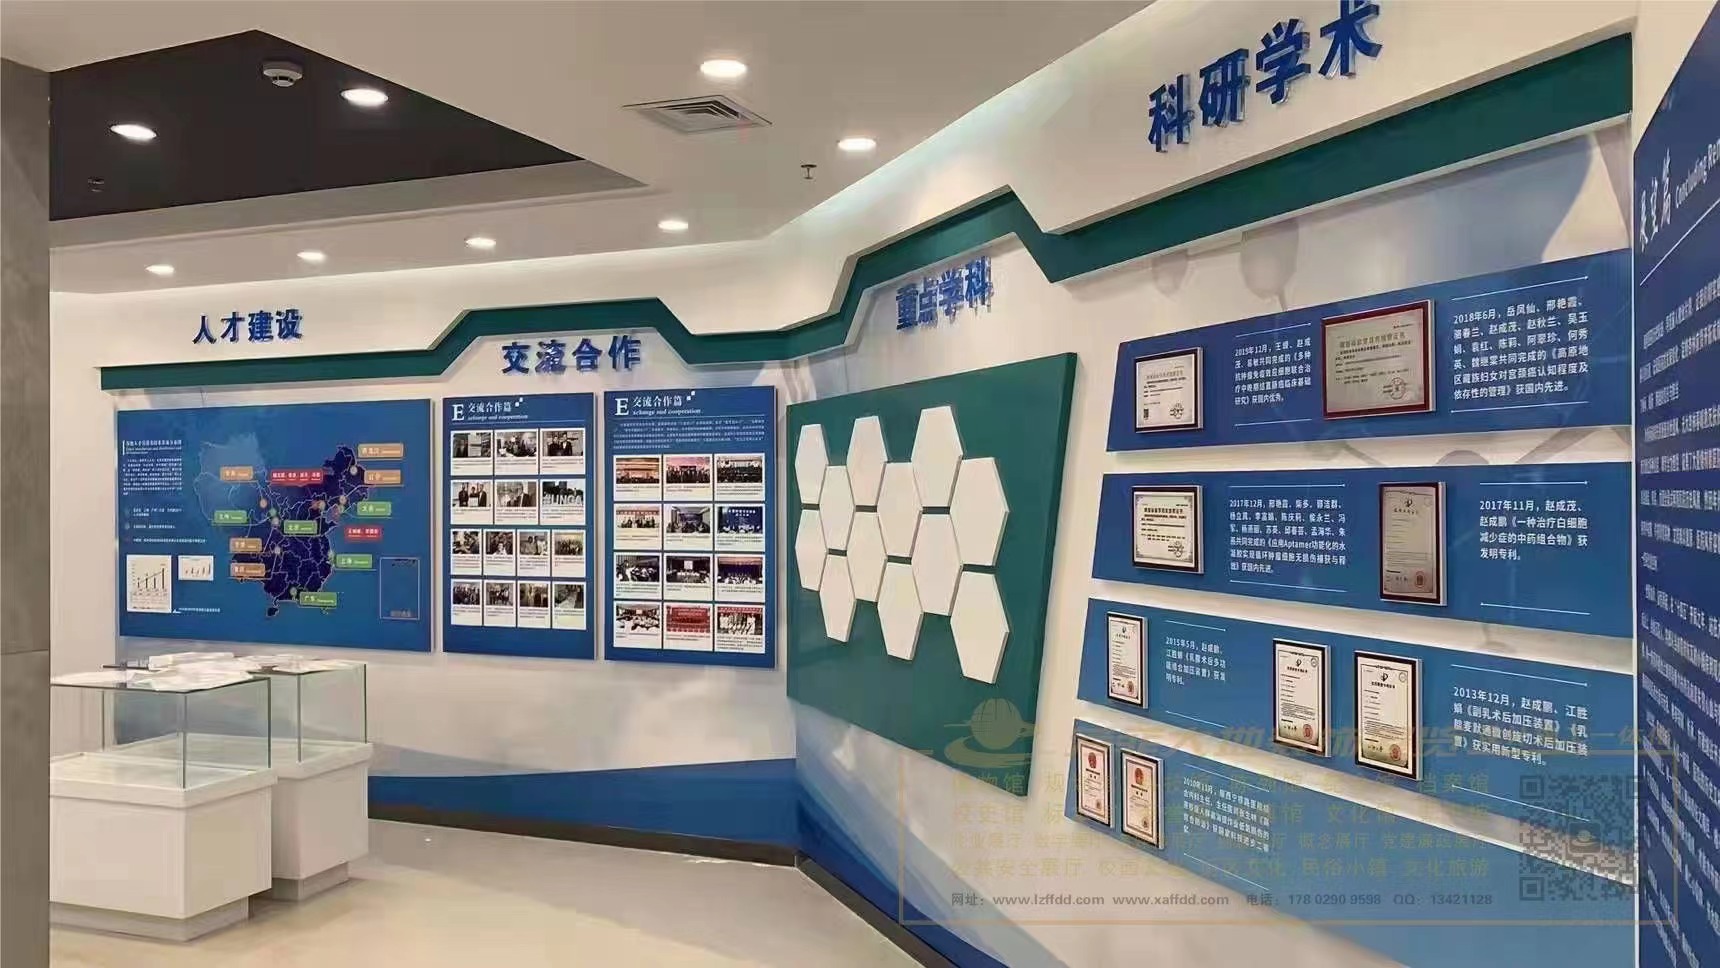 芳菲大地设计施工的青海省第五人民医院院史馆即将完成建设布展展览馆设计